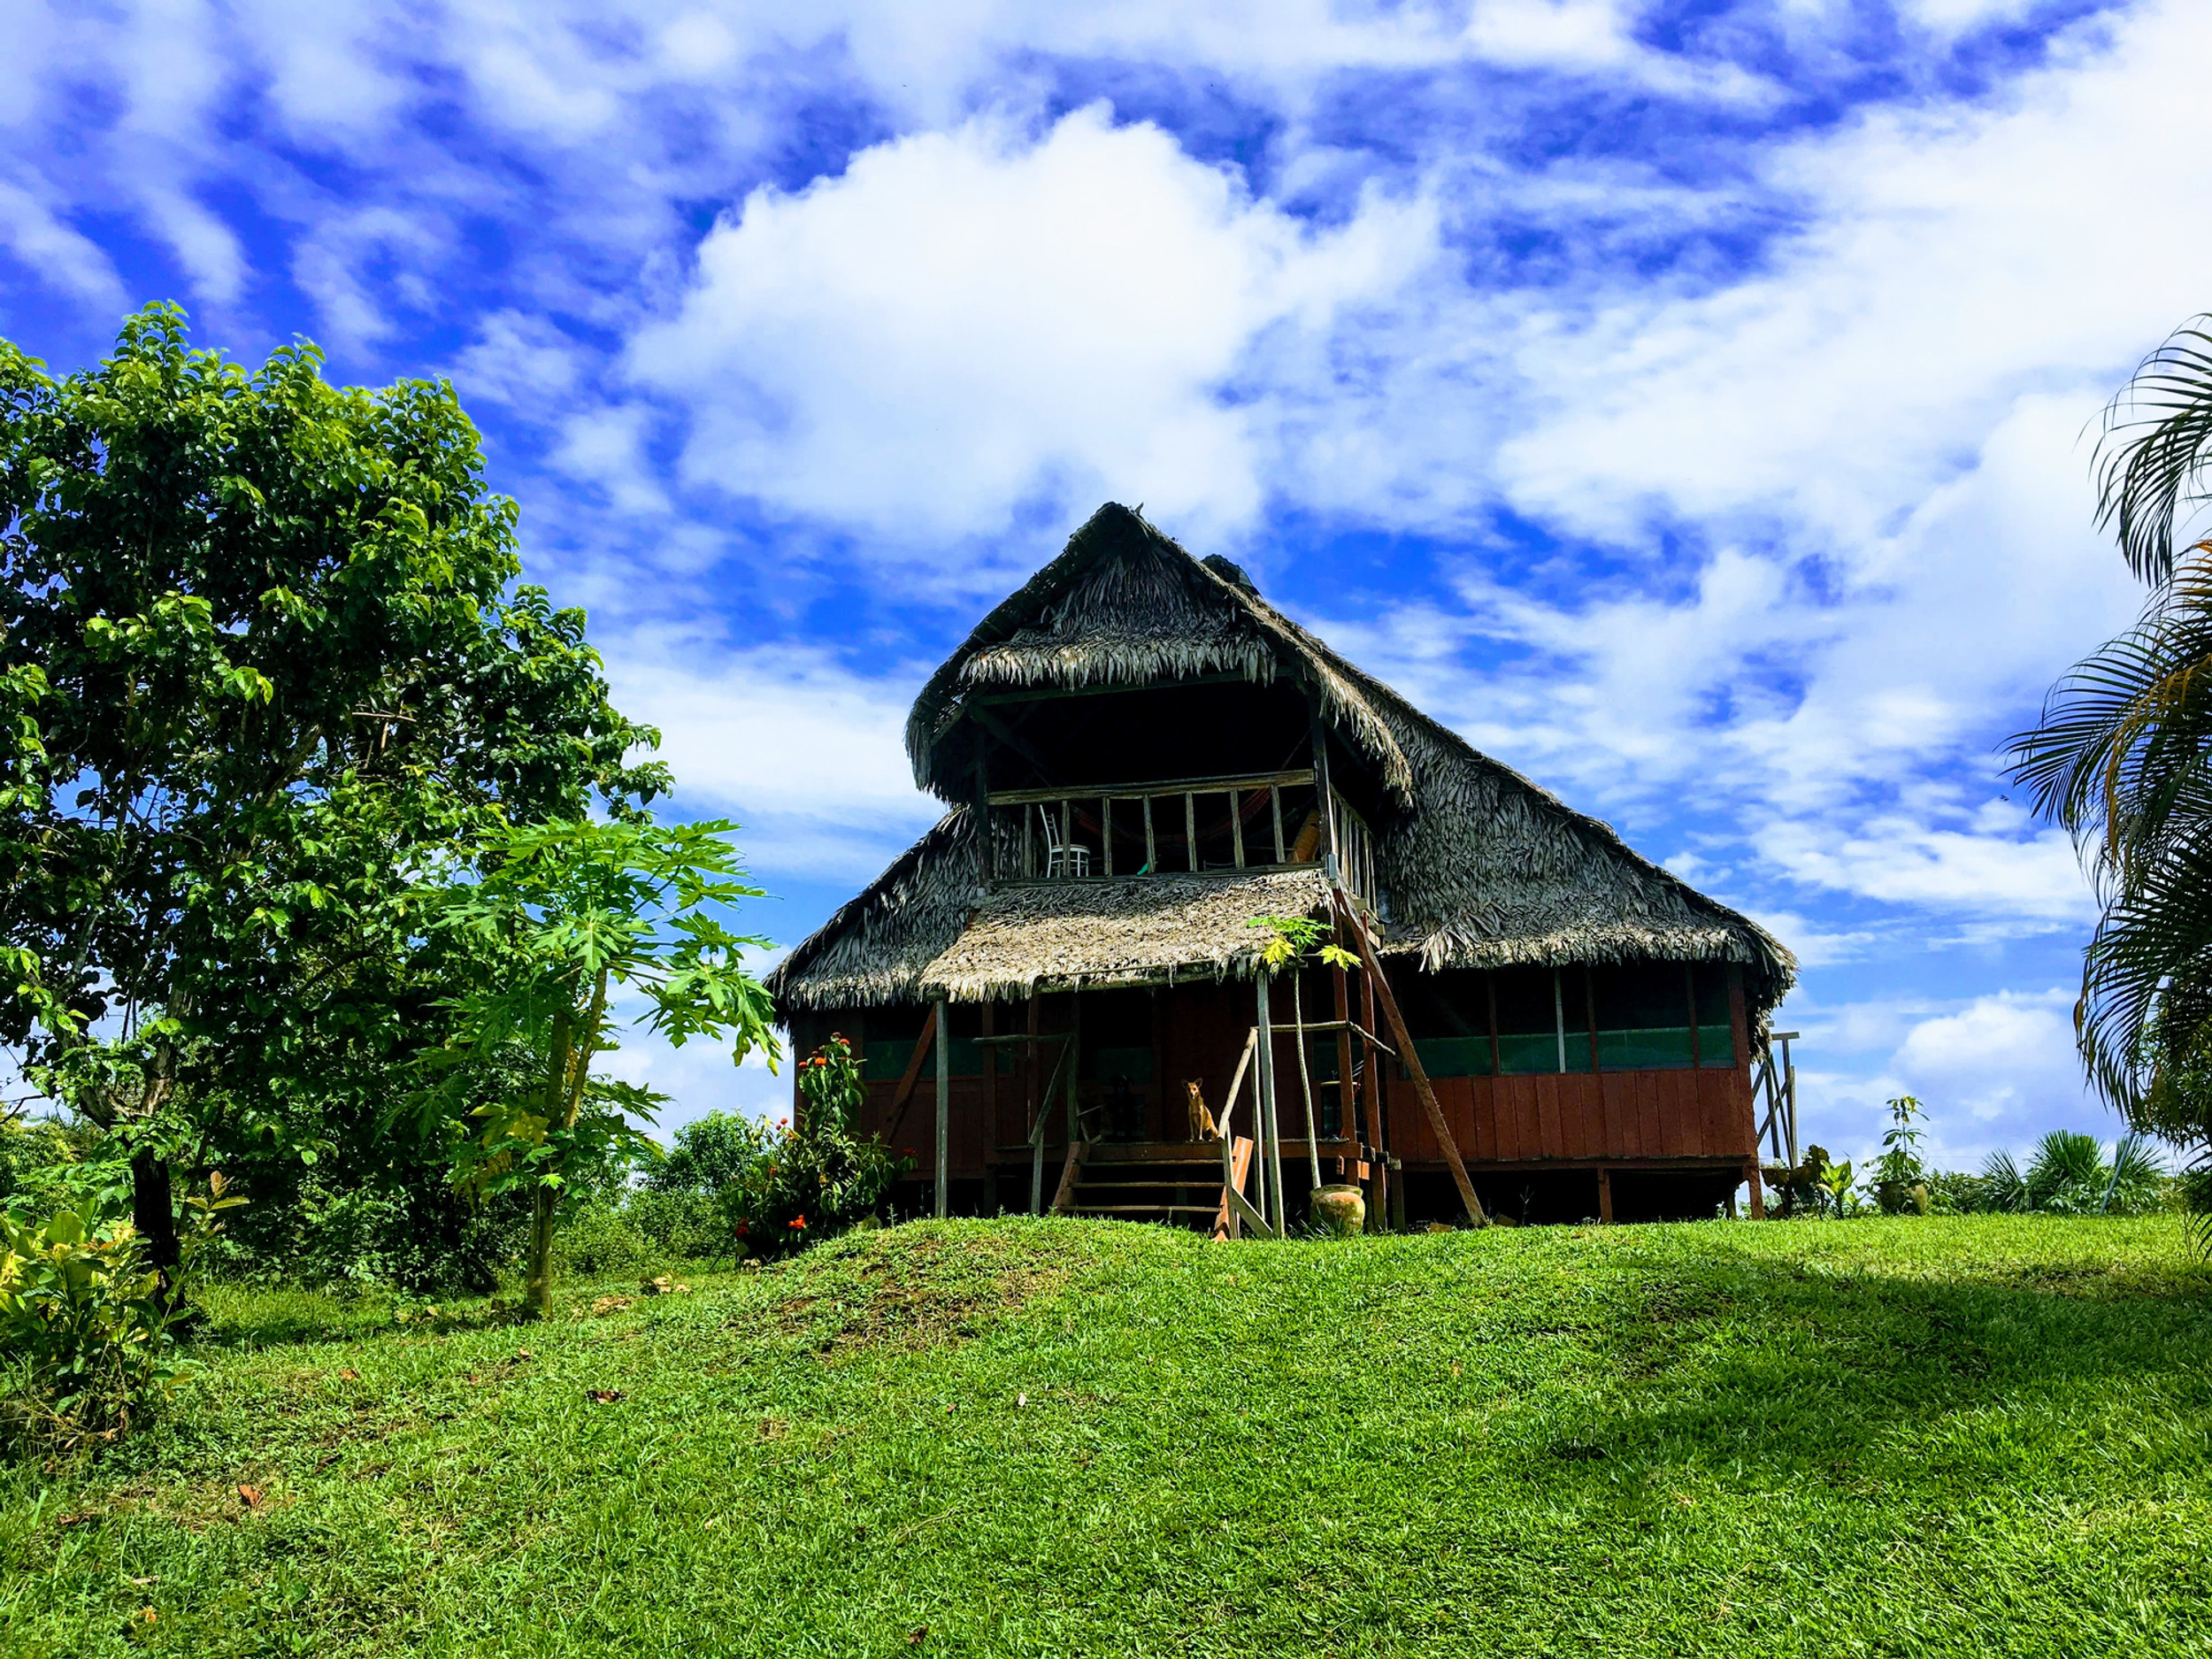 Selva Vida Lodge & Retreat Center- Accommodation in Amazon Jungle, Santa Maria